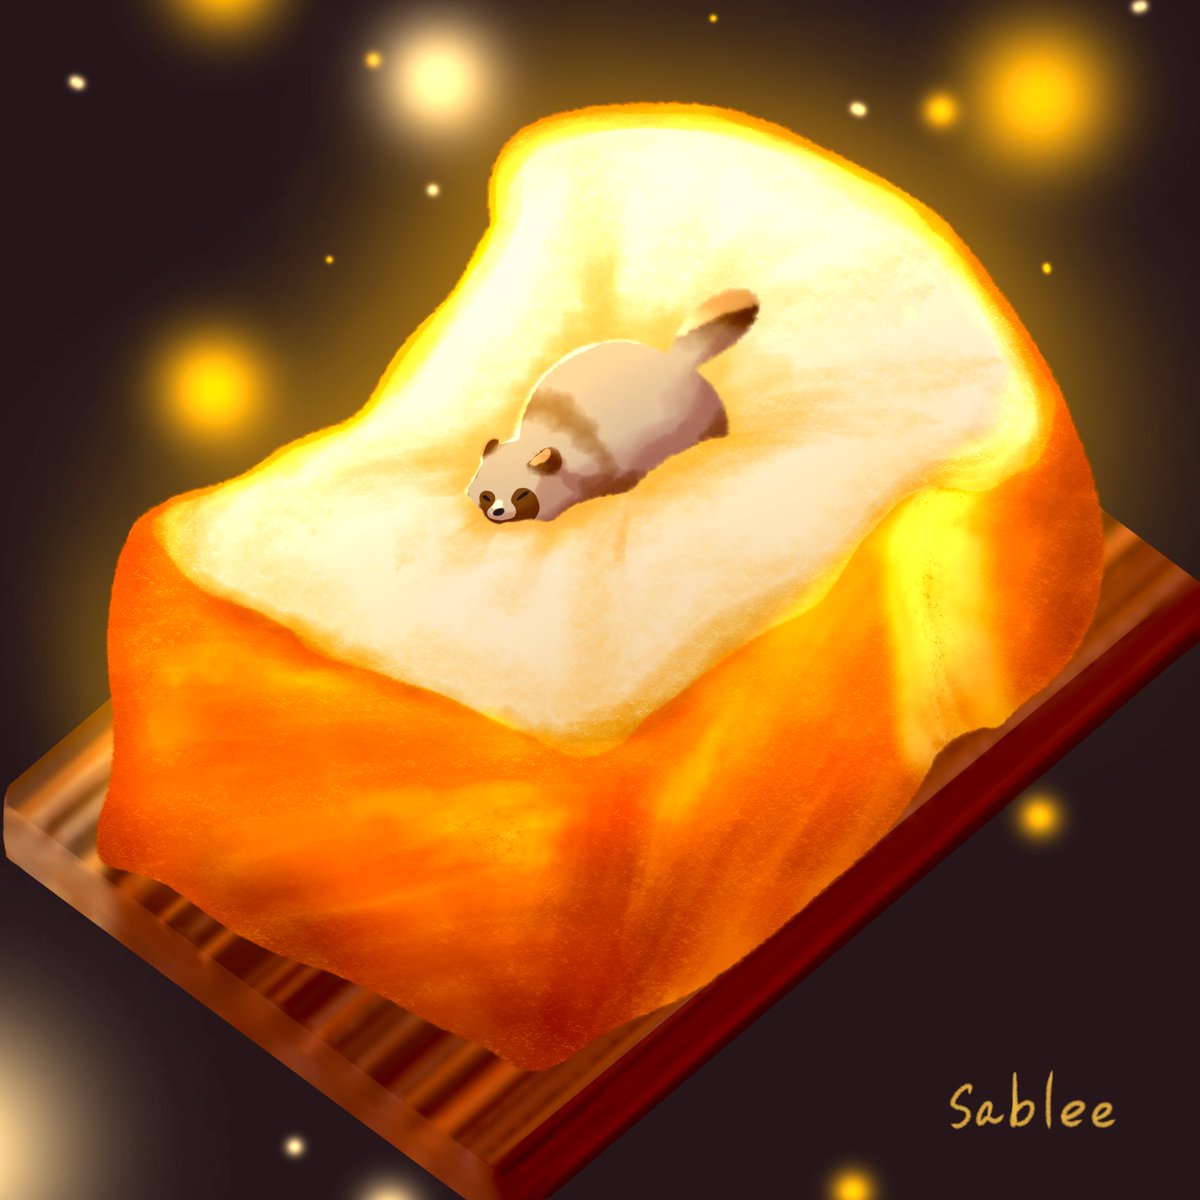 フカフカのパンとタヌキの夢

#パンの日  #パンの記念日  
#illustration